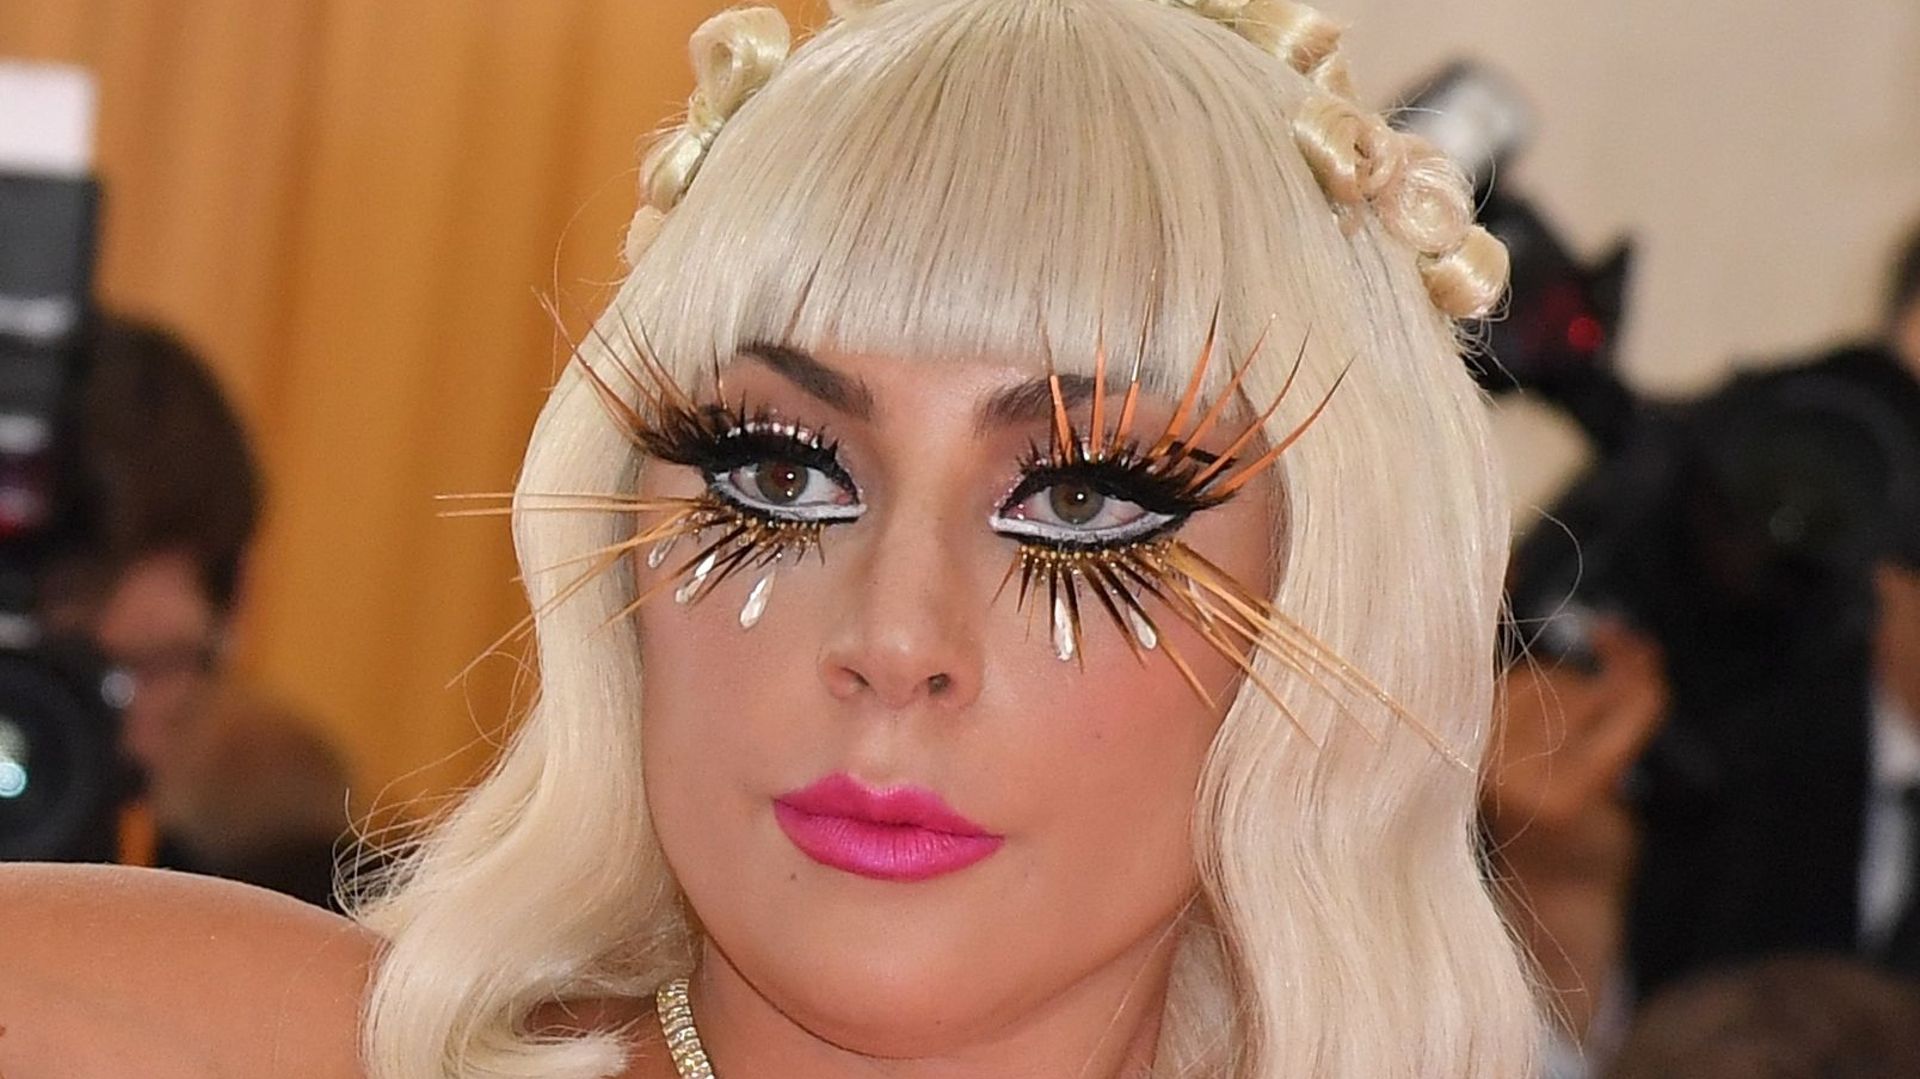 La chanteuse et comédienne Lady Gaga au gala du Met 2019 le 6 mai 2019 à New York.